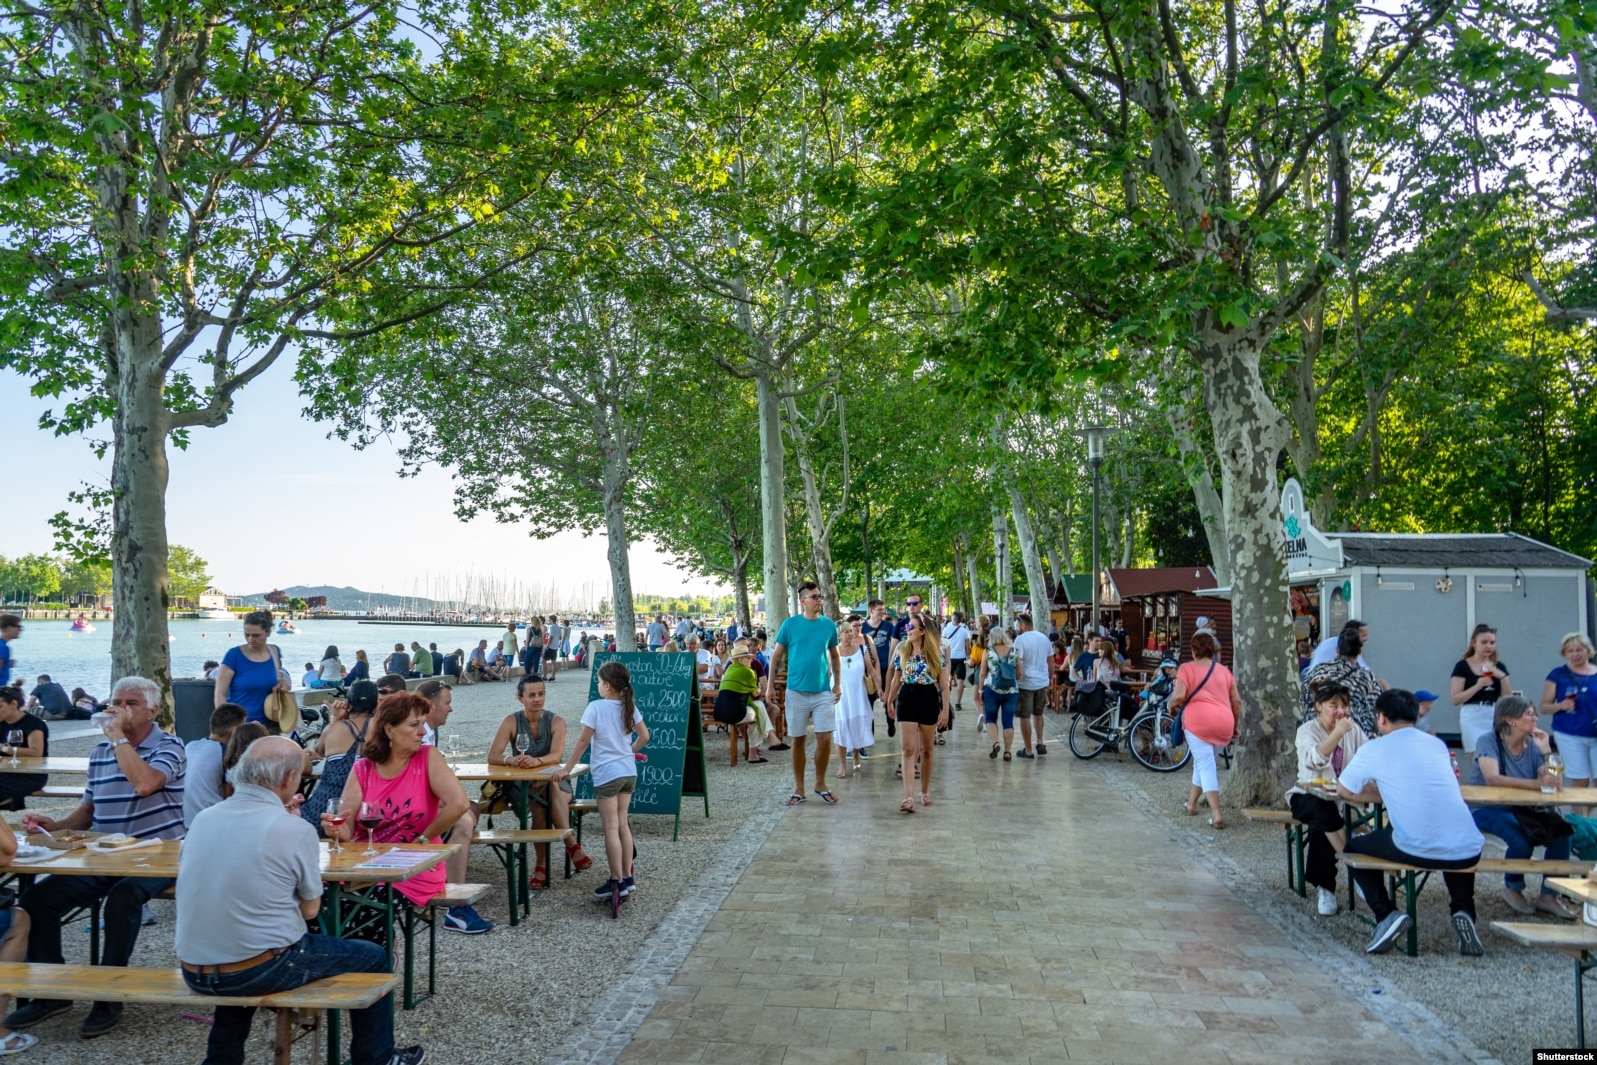 Turistët e mbledhur në bregun e liqenit Balaton për të ndjekur një festival peshku më 2019.